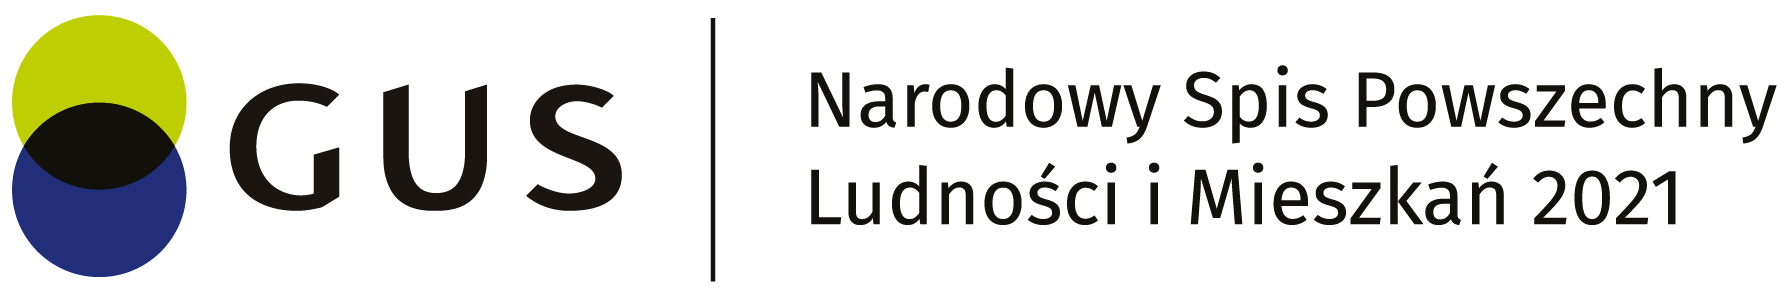 Logo Głównego Urzędu Statystycznego z pełną nazwą w języku polskim: Narodowy Spis Powszechny Ludności i Mieszkań 2021, w kolorze